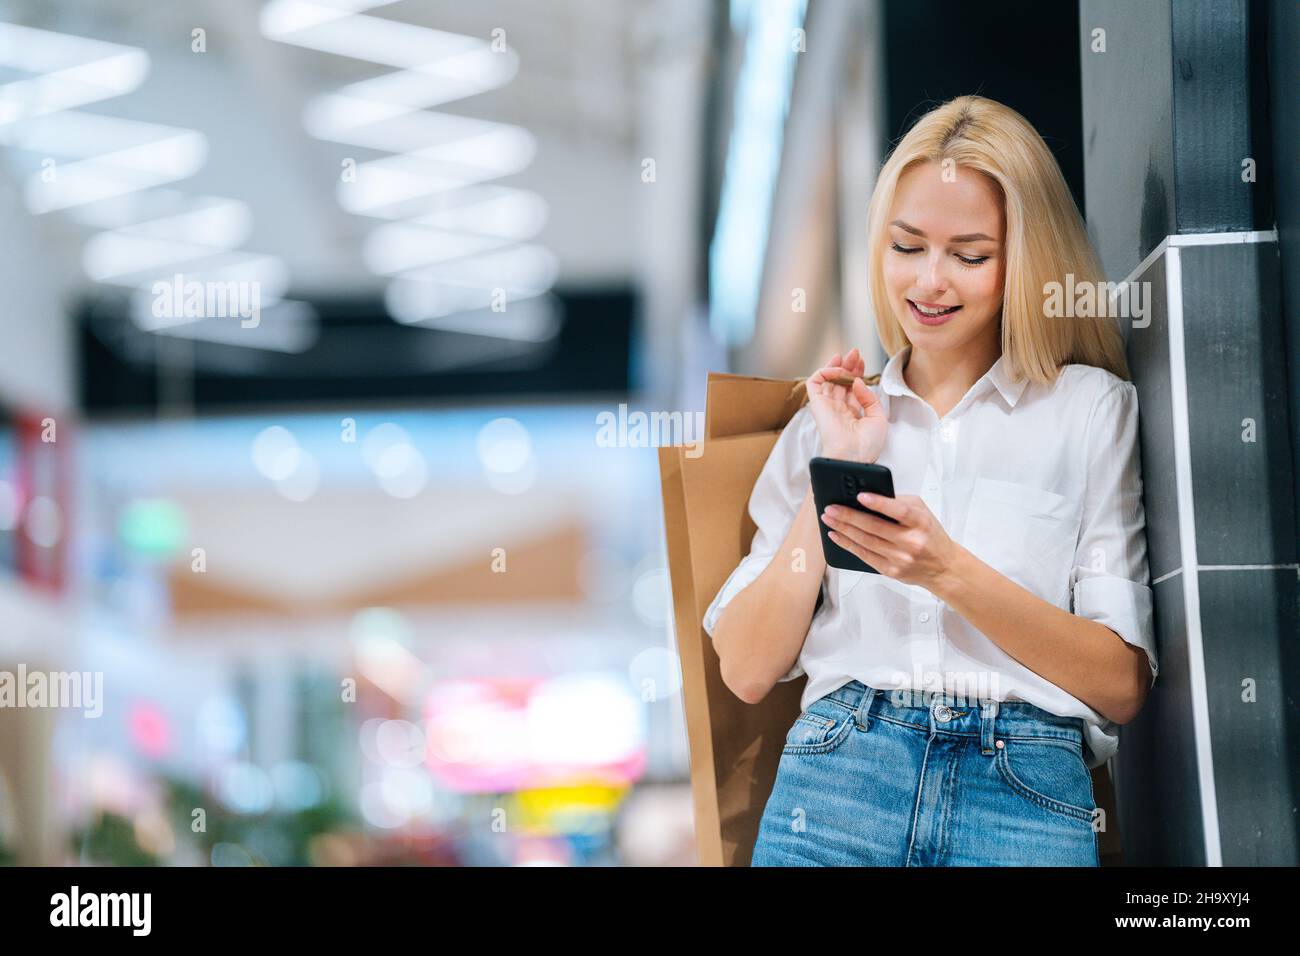 Vista en ángulo bajo de una mujer joven rubia sonriente y atractiva con ropa elegante utilizando el teléfono móvil sosteniendo bolsas de papel con compras. Foto de stock